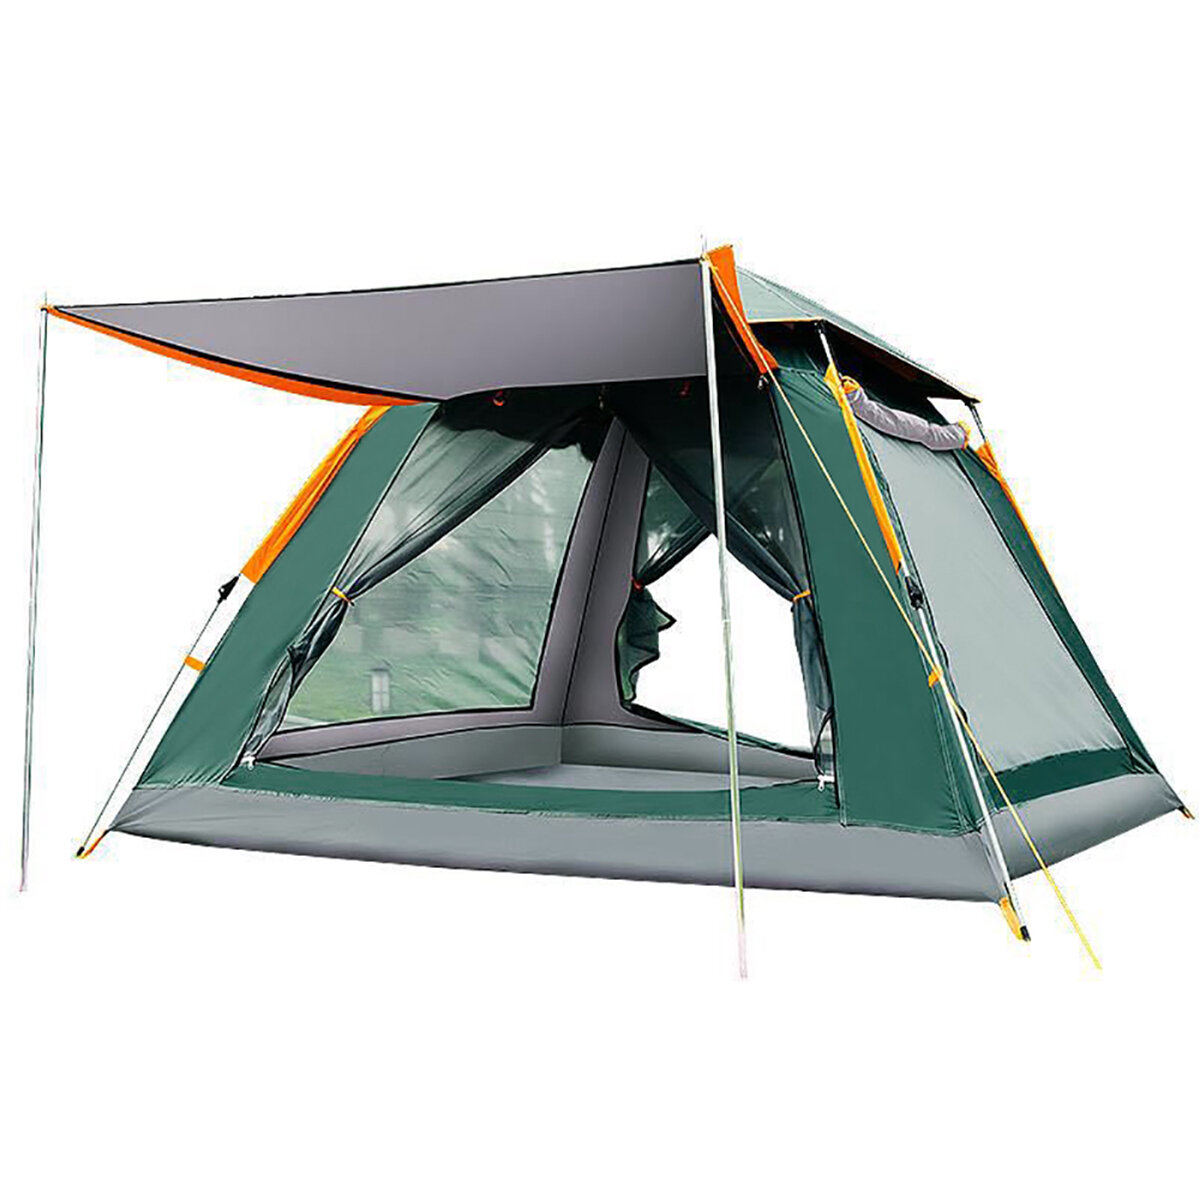 3-4 أشخاص / 5-8 شخص خيمة تخييم مفتوحة السرعة أوتوماتيكية 210T أكسفورد من القماش ذو الطابقين للحماية من أشعة الشمس ضد للماء خيمة مأوى للشمس خيمة